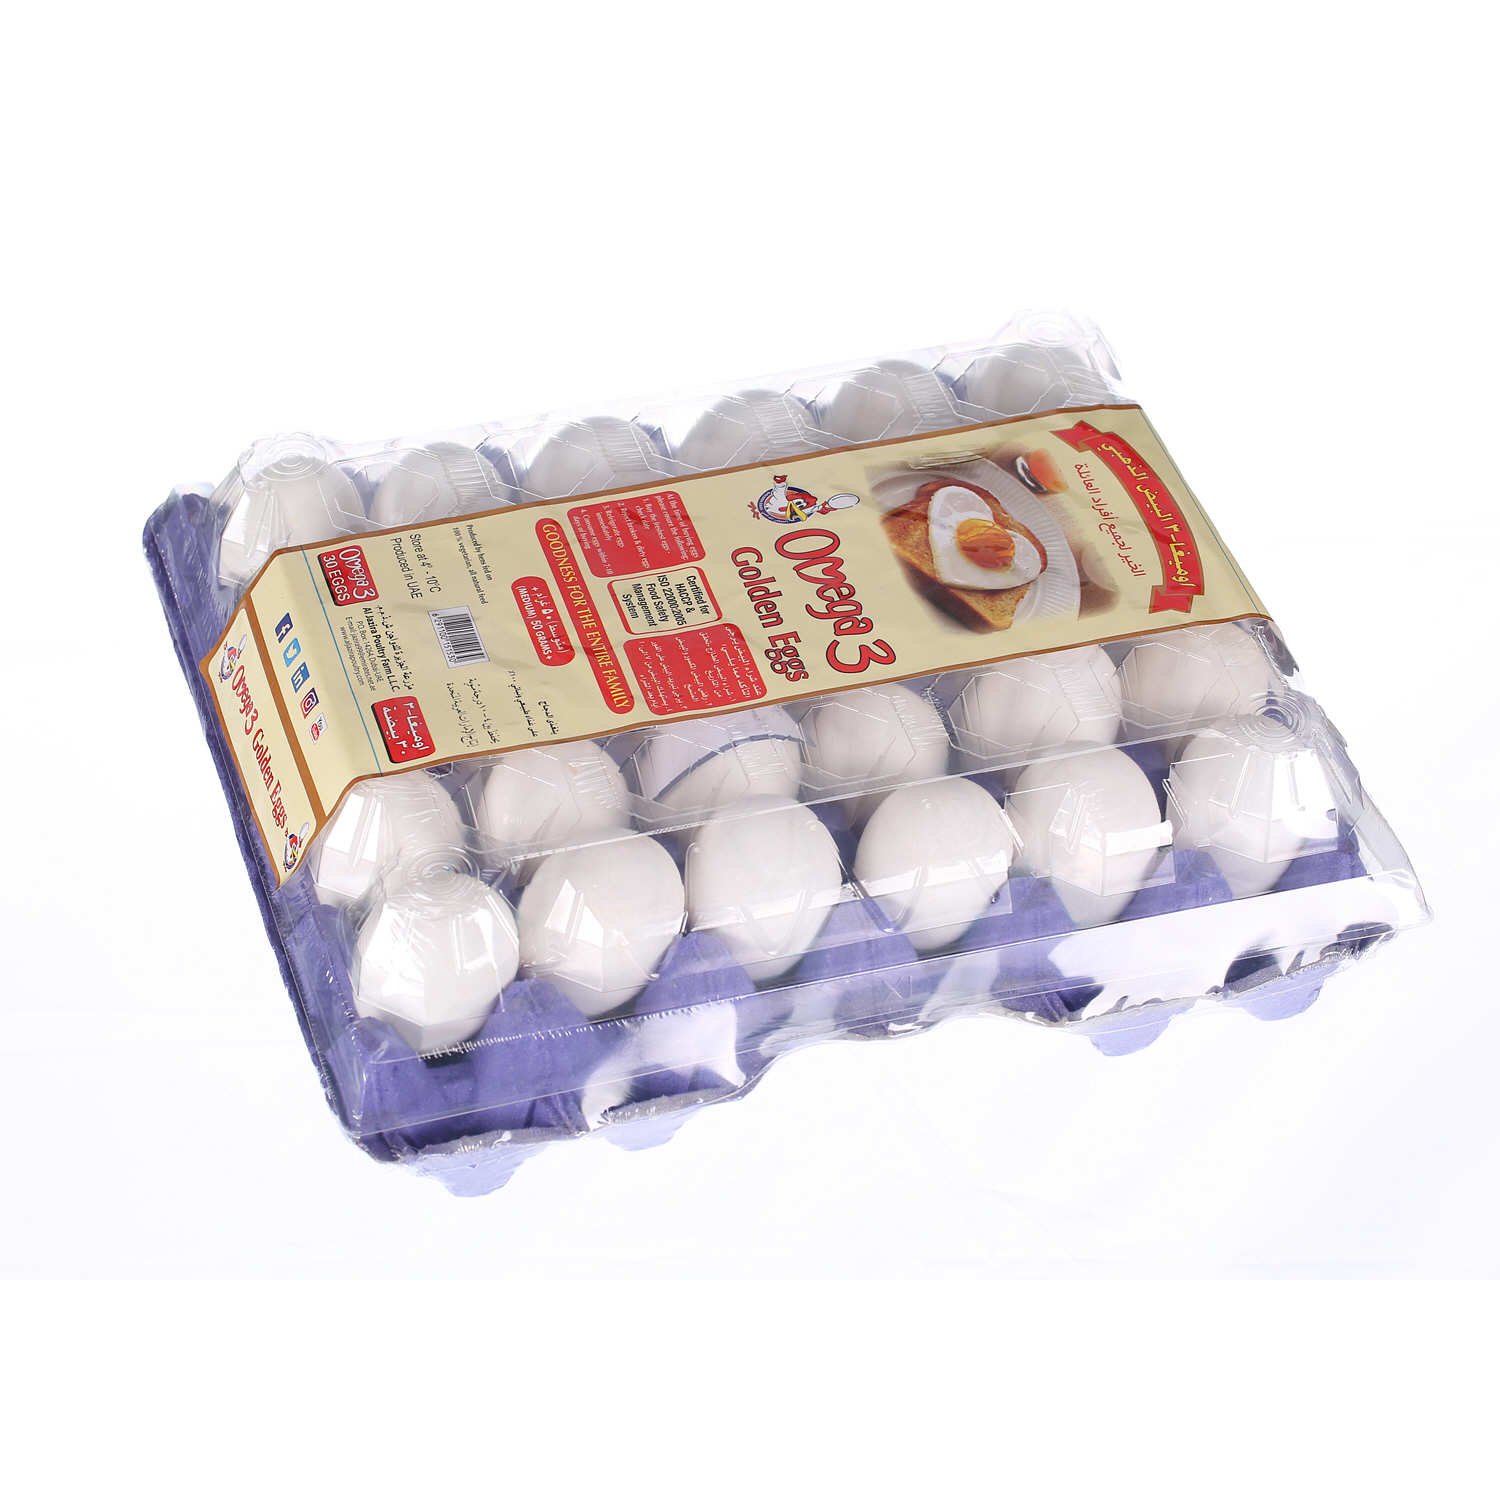 Al Jazira Omega 3 Golden Eggs 30 Pack